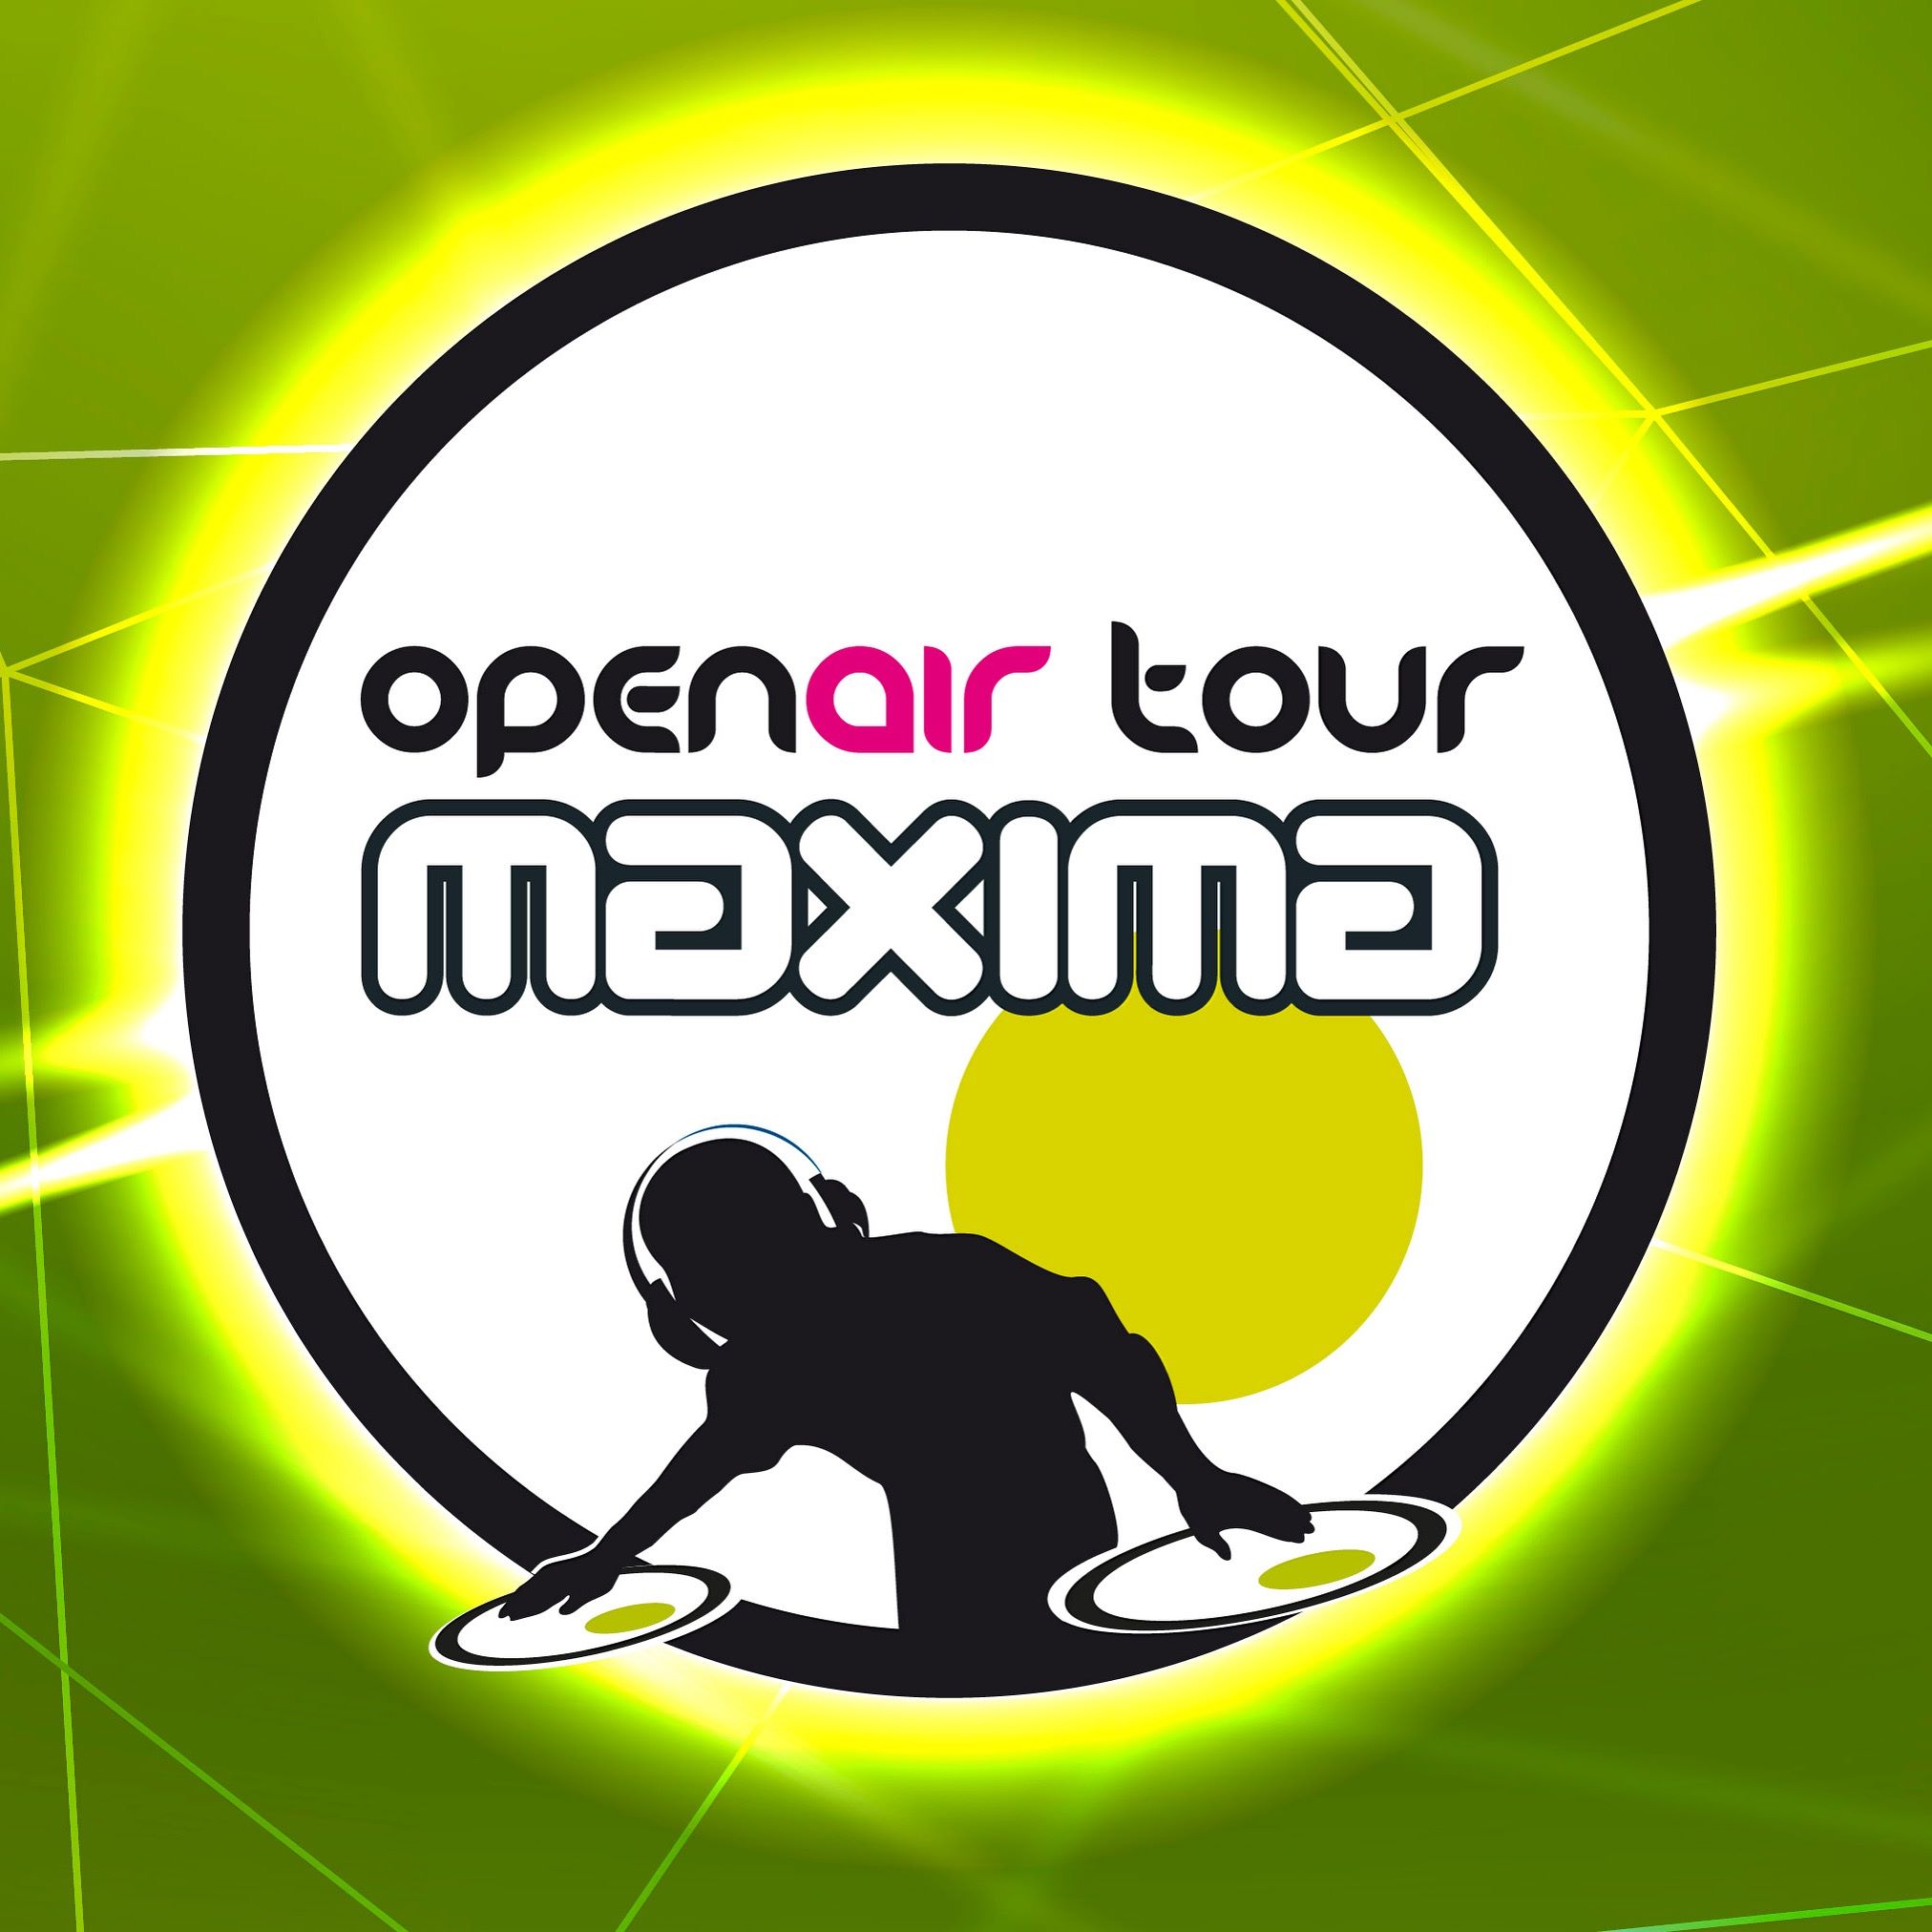 Openair Tour Maxima